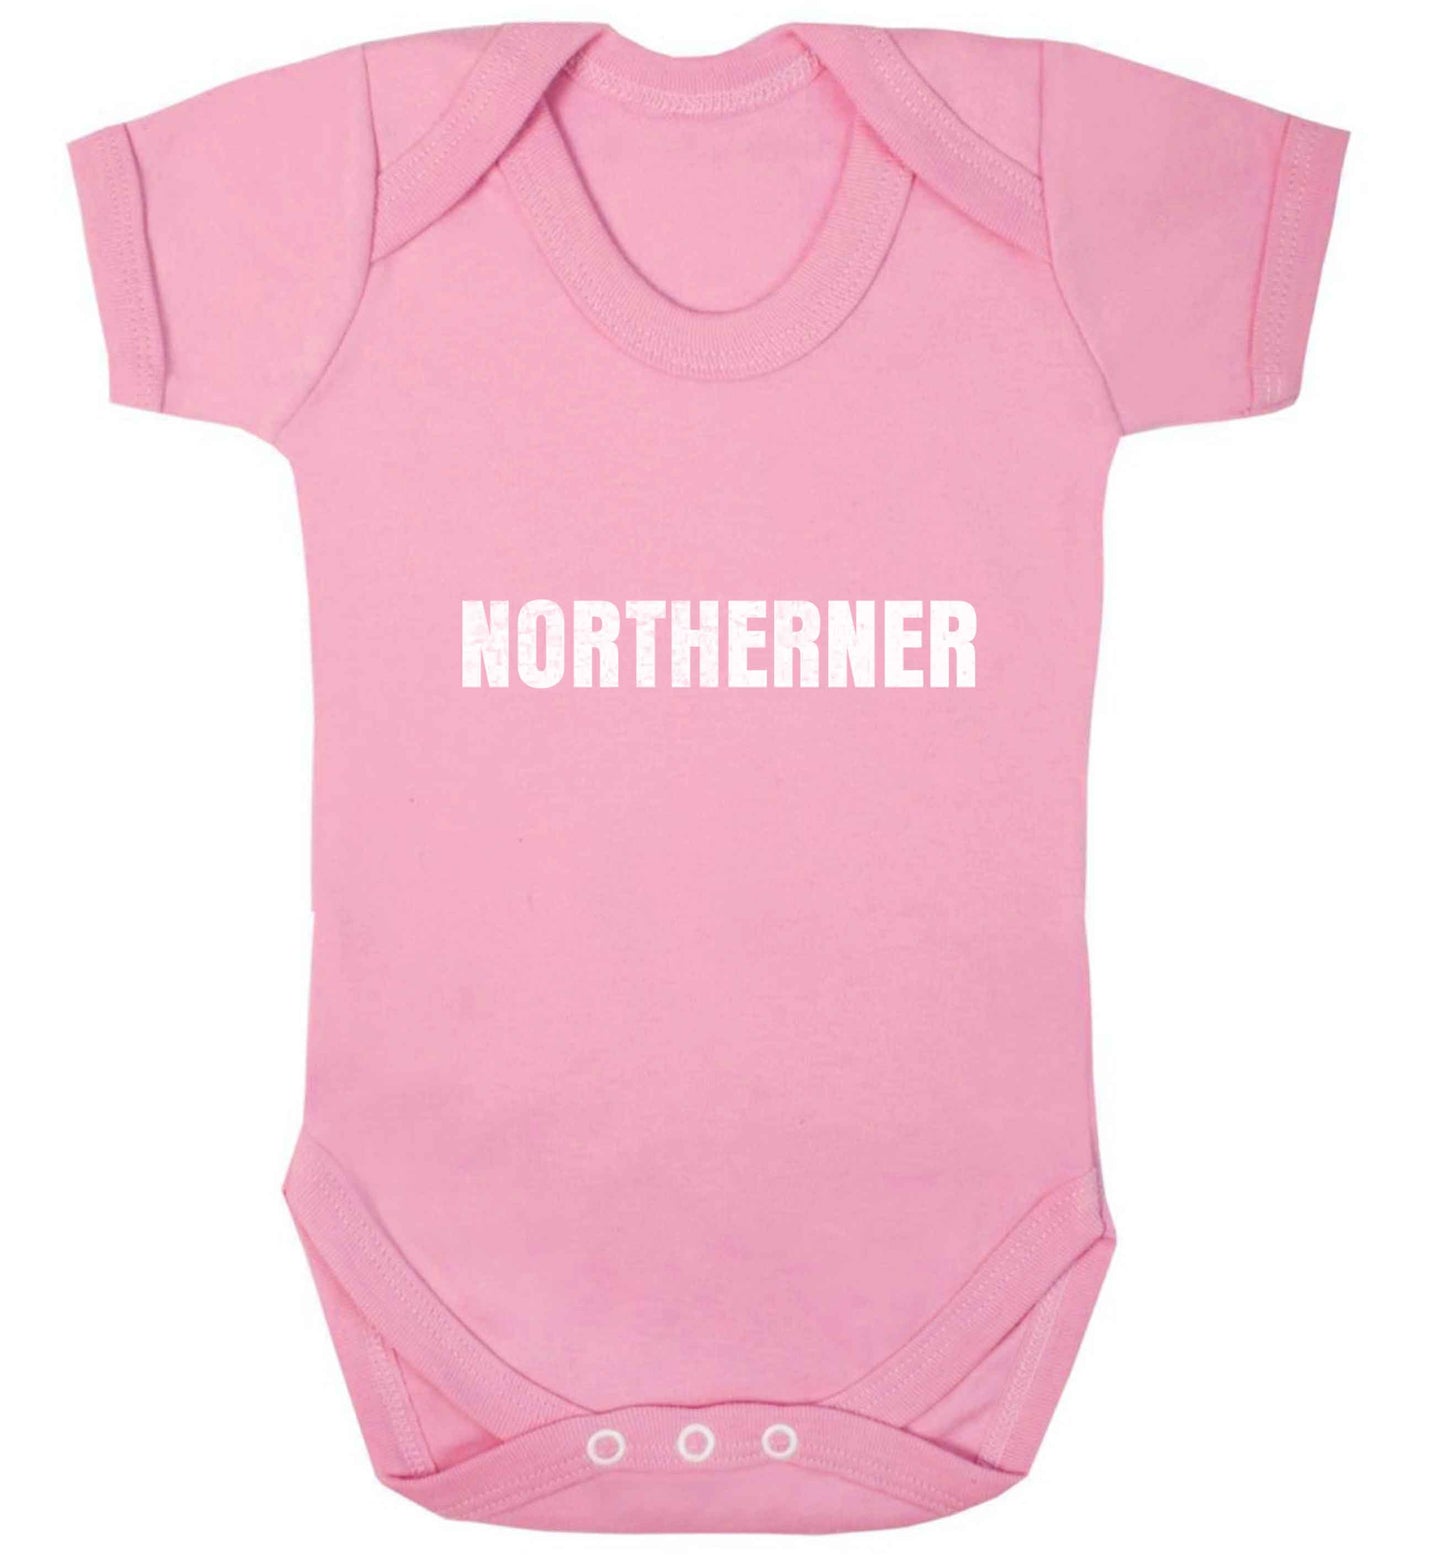 Northerner baby vest pale pink 18-24 months